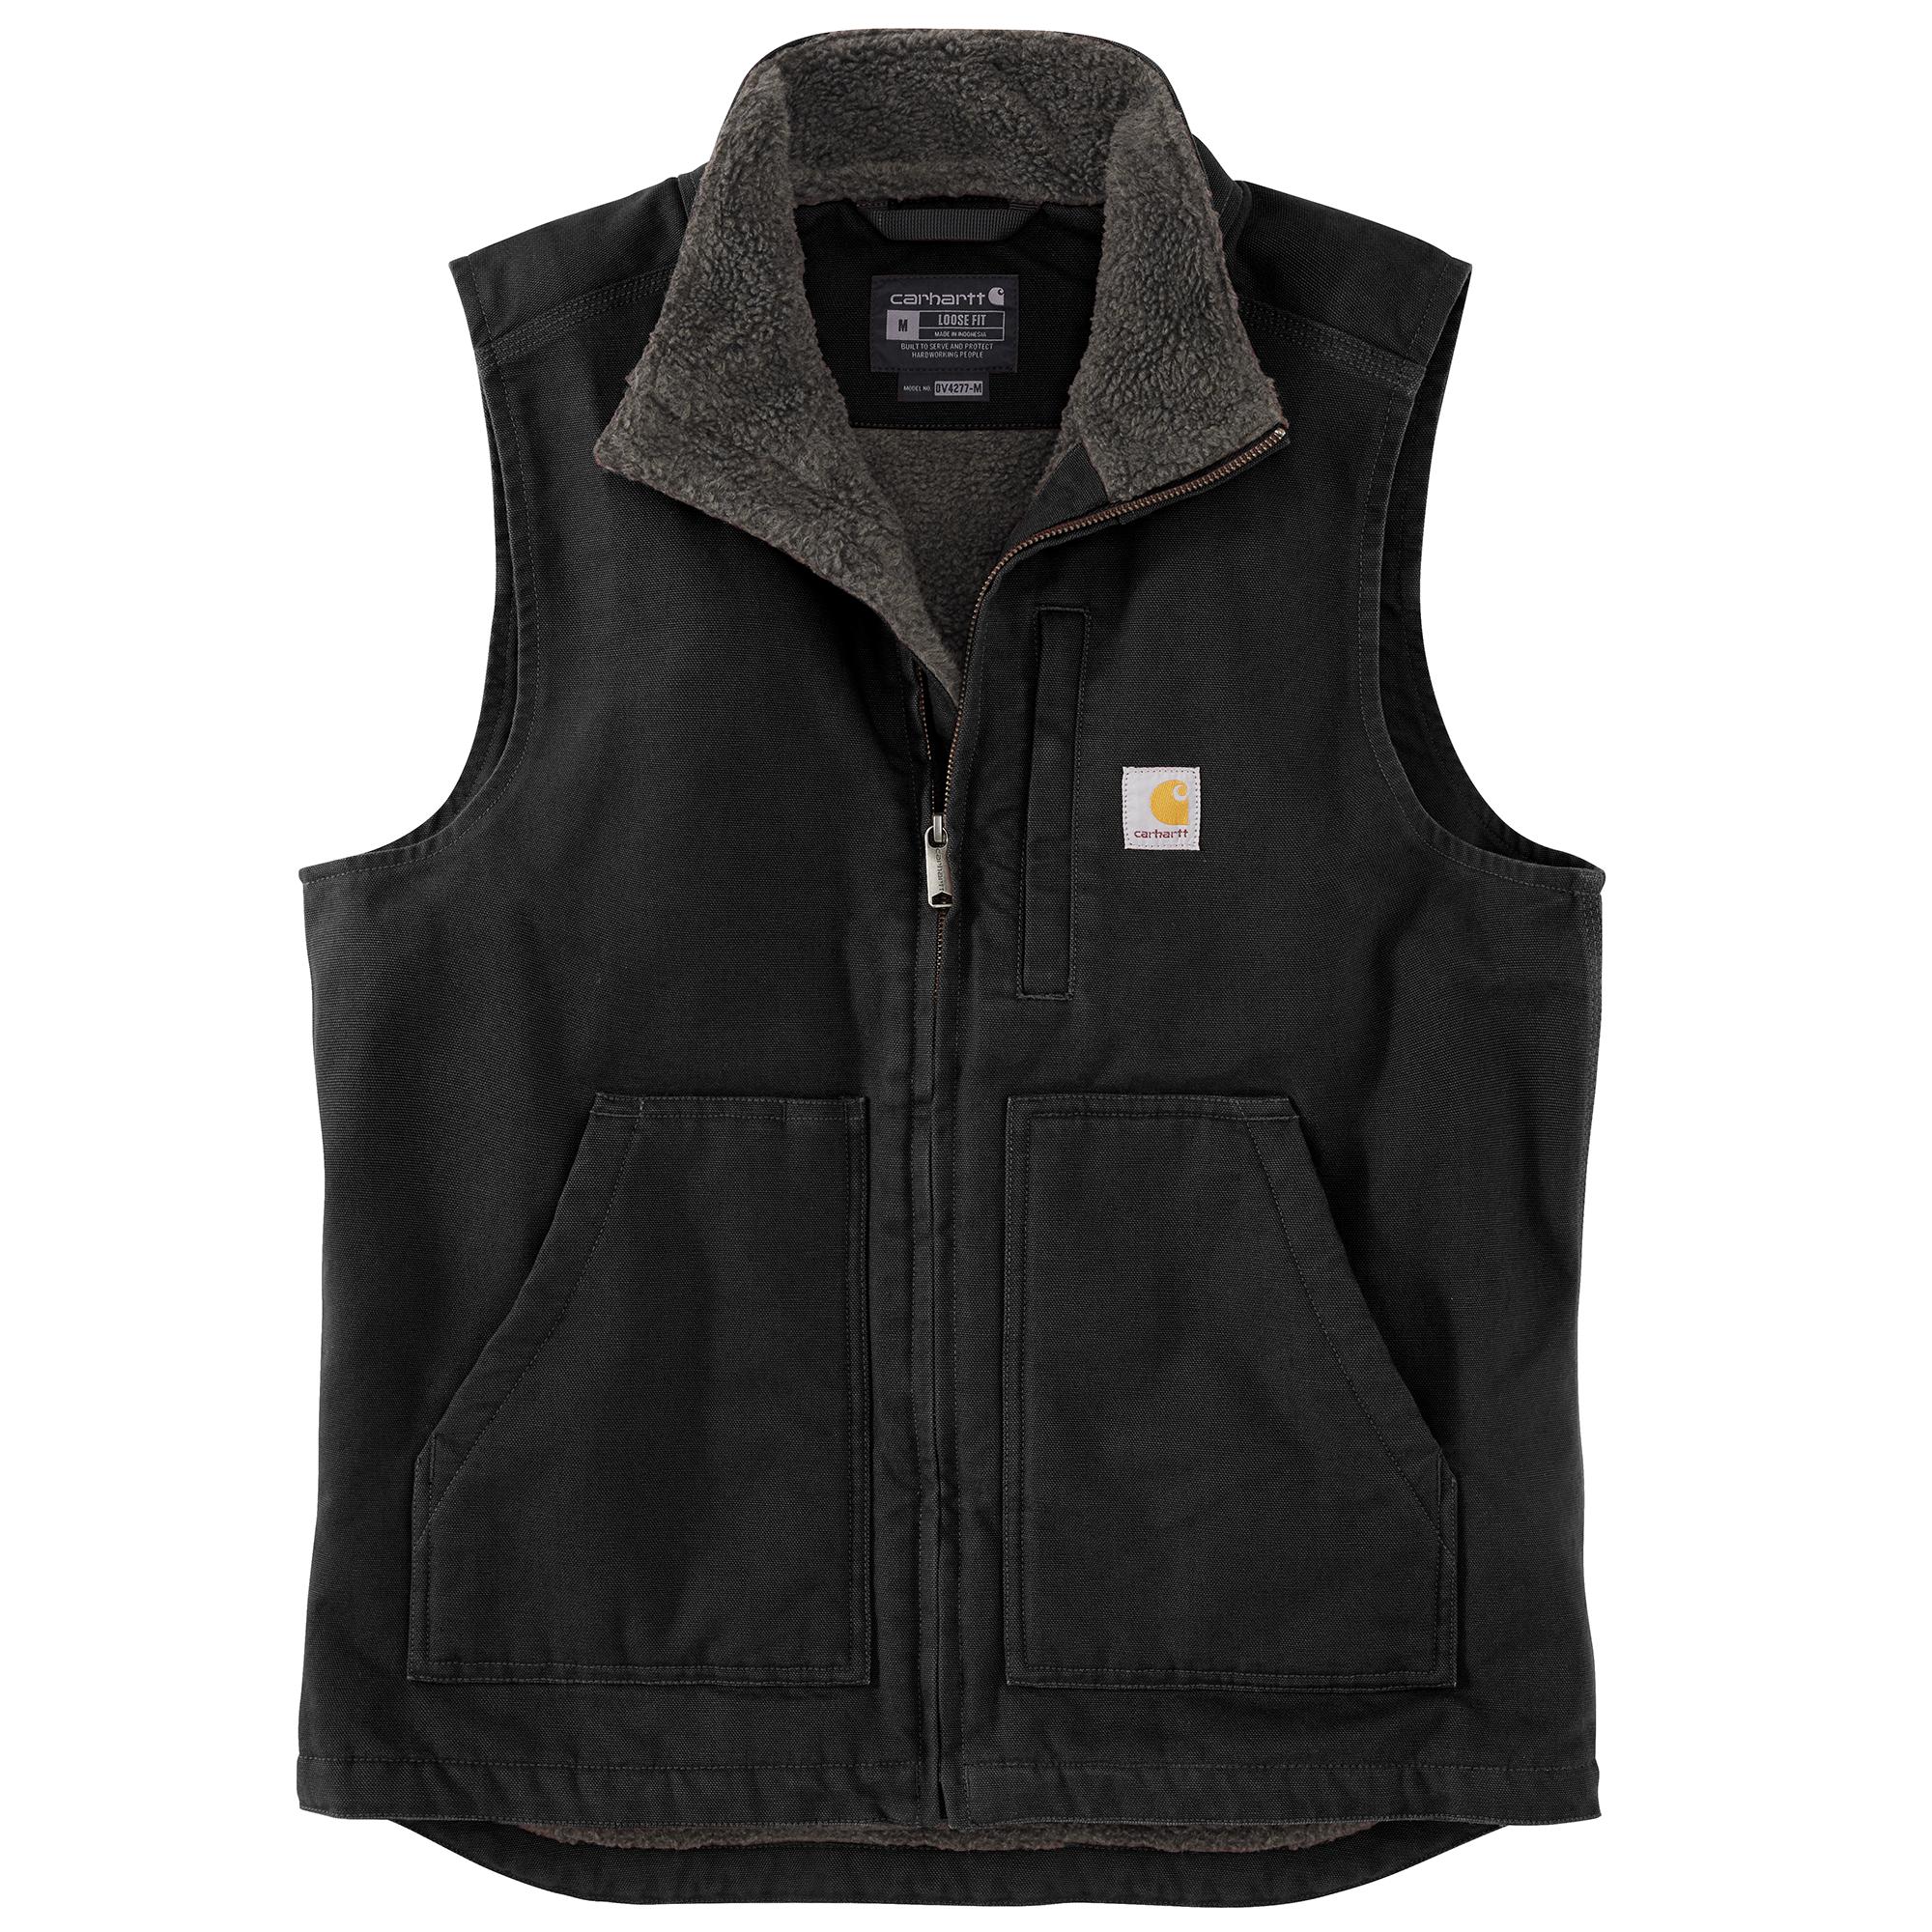 'Carhartt' Men's Duck Sherpa Lined Vest - Black